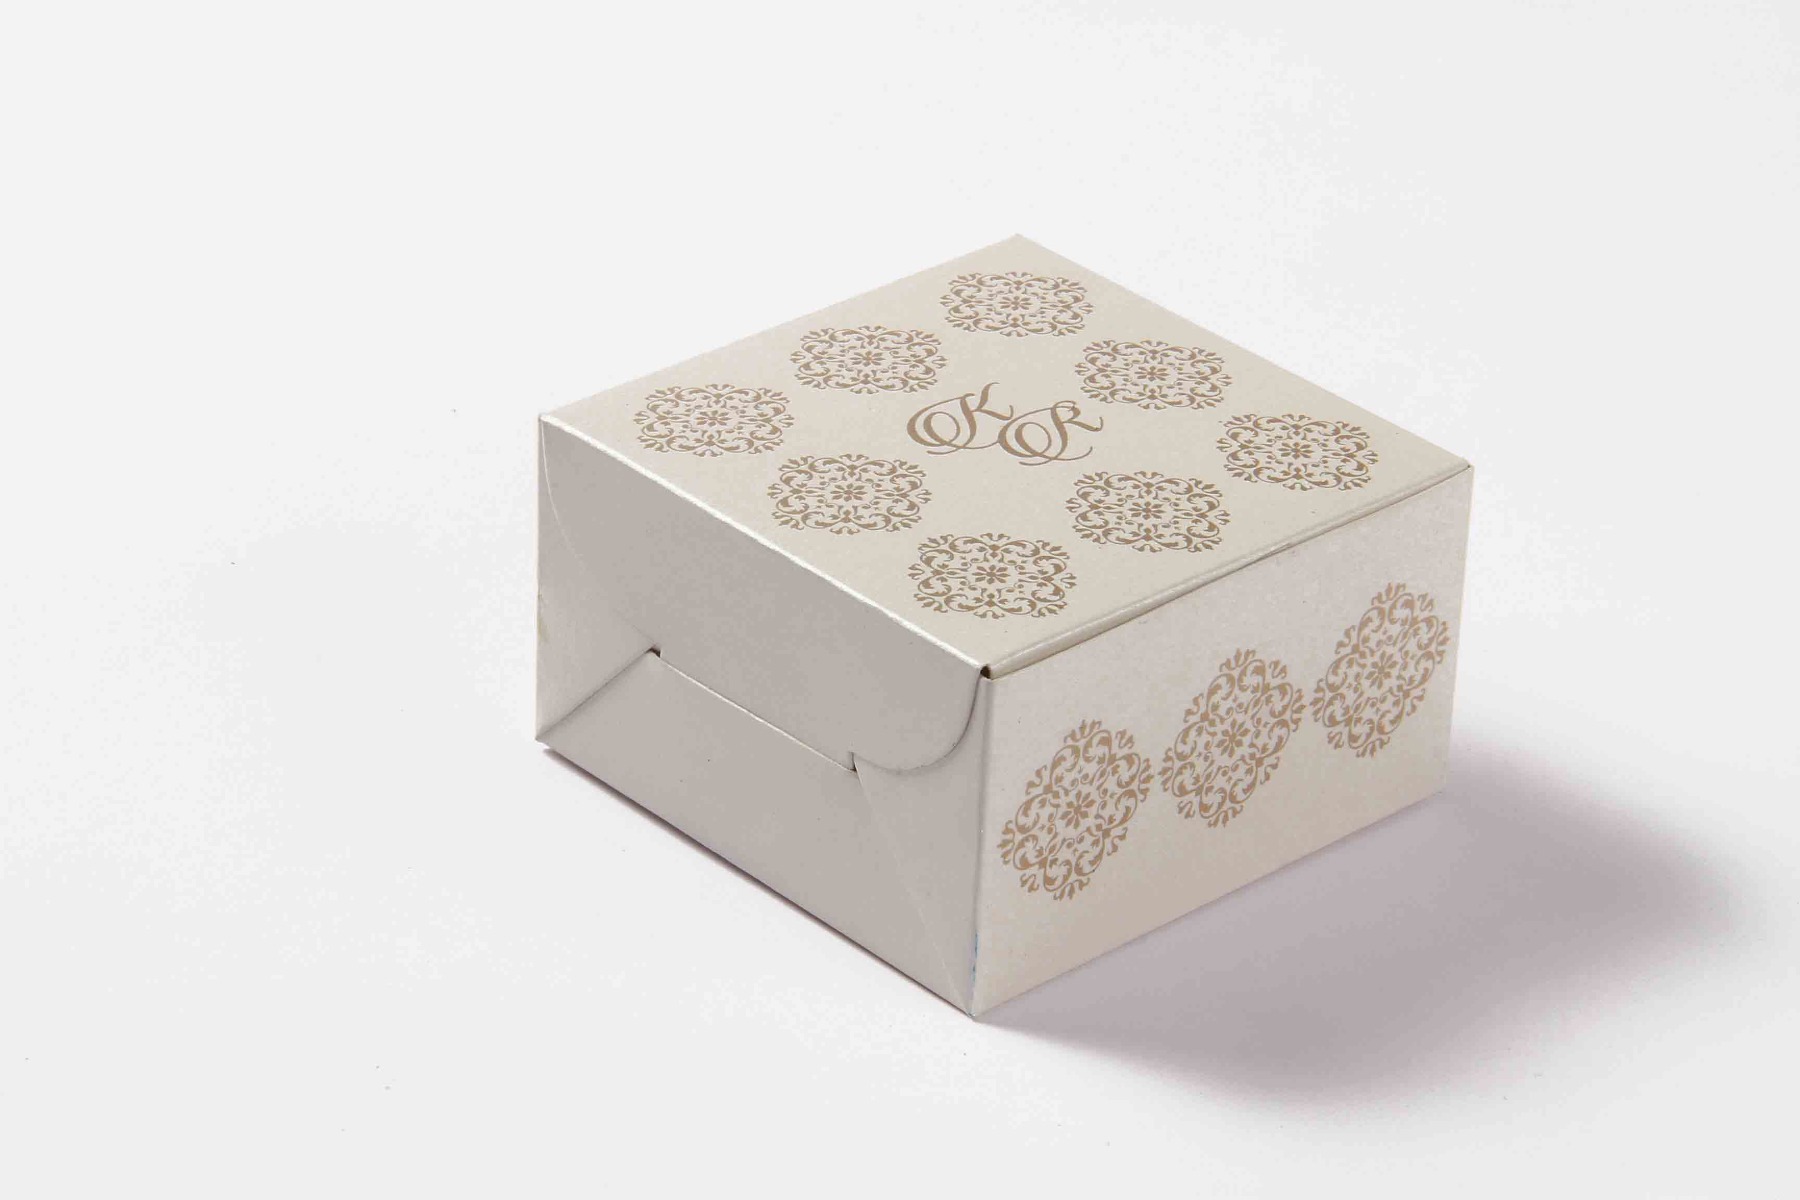 Small Size Cube Box No 6 - White-0